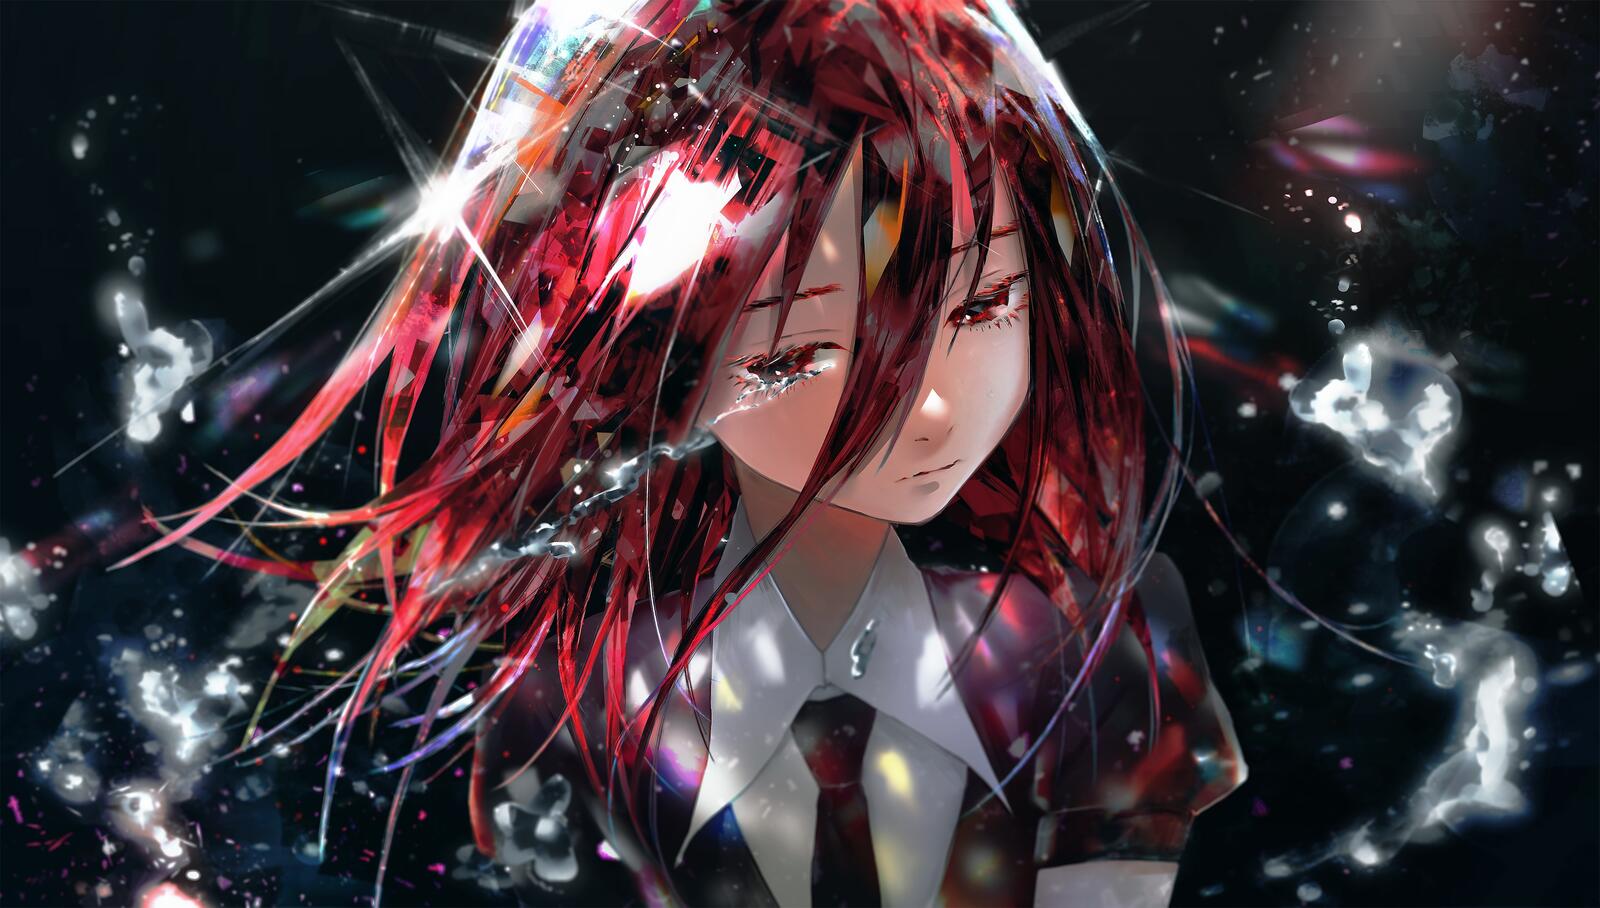 Бесплатное фото Портрет аниме девочки с красными волосами